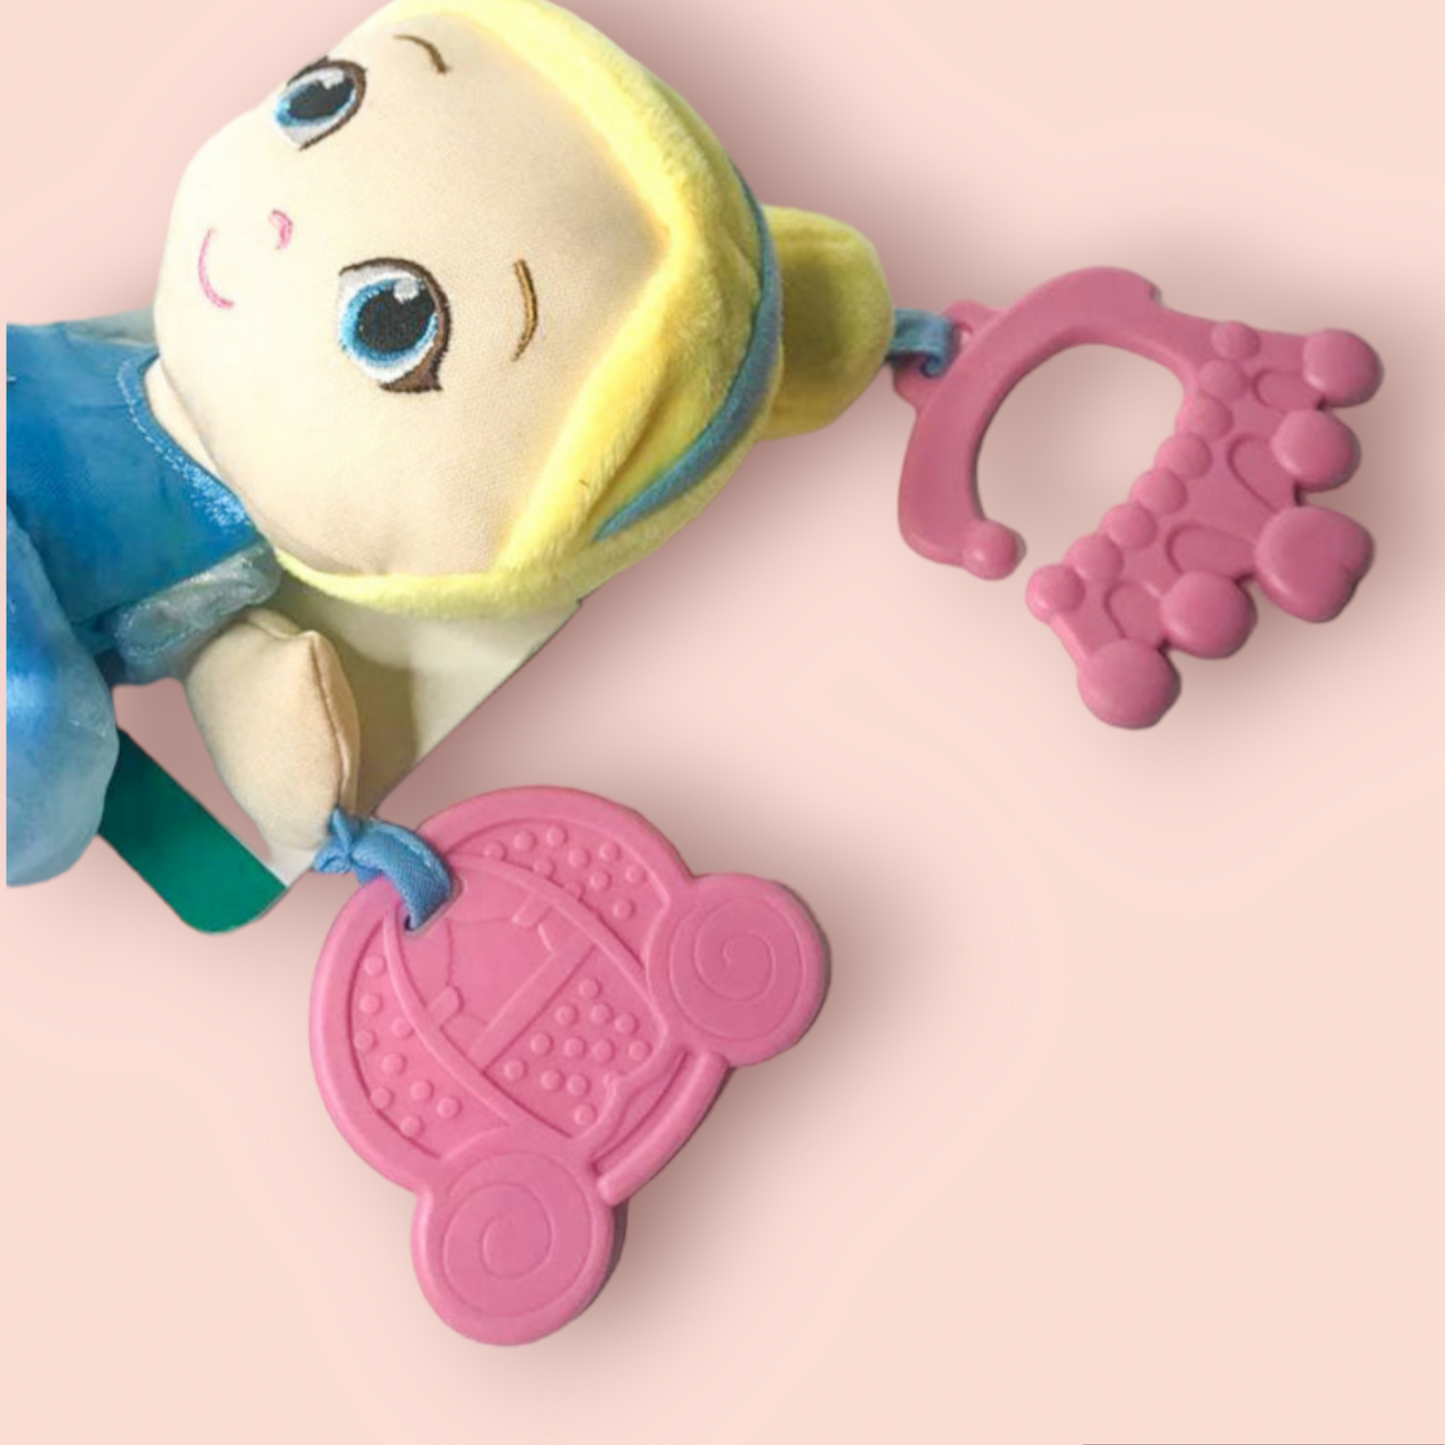 Disney Princess Cinderella Baby Activity Toy